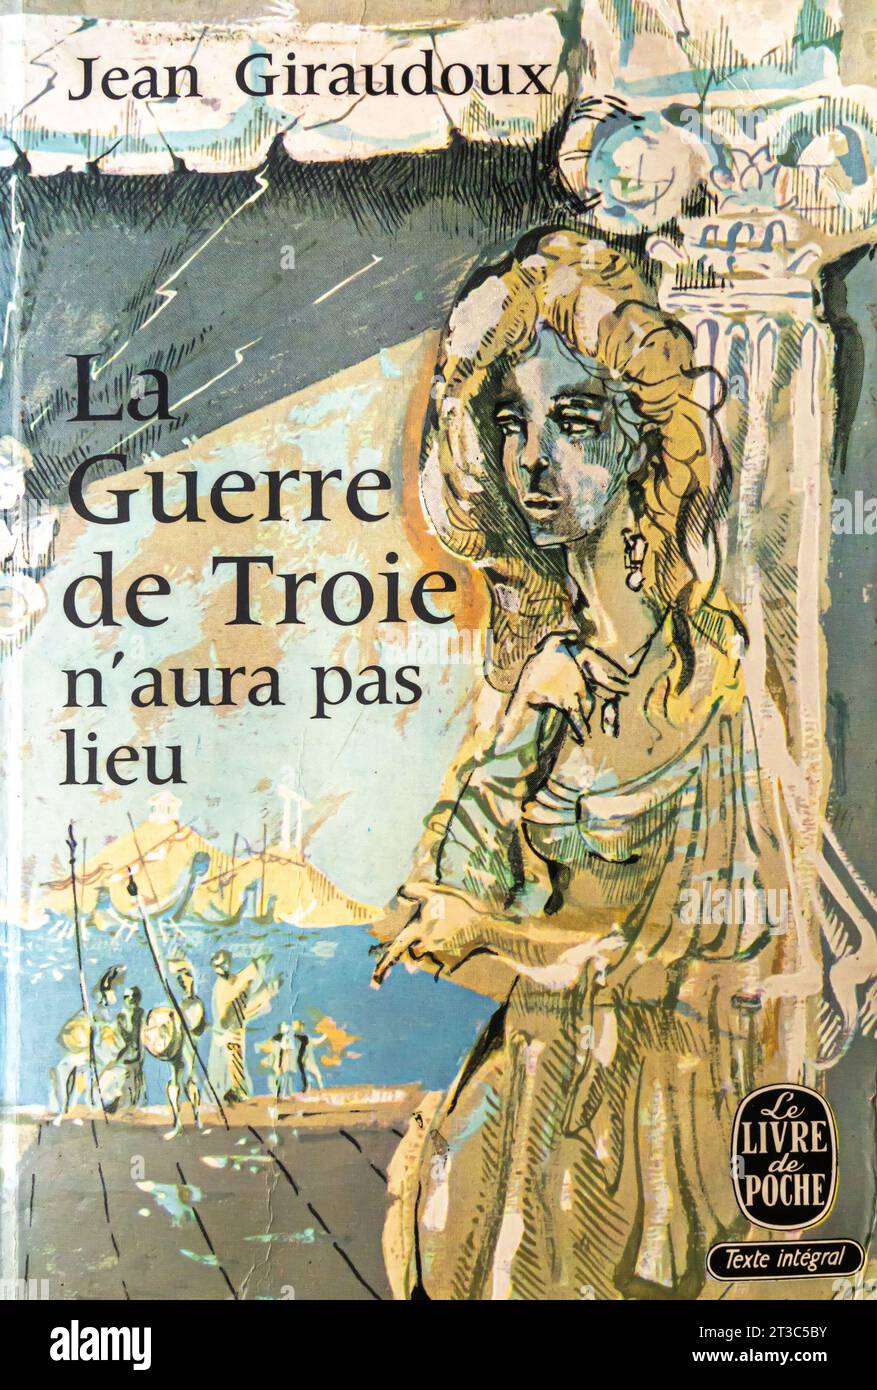 La Guerre de Troie N'aura Pas Lieu 1935 French Edition by Jean Giraudoux Stock Photo